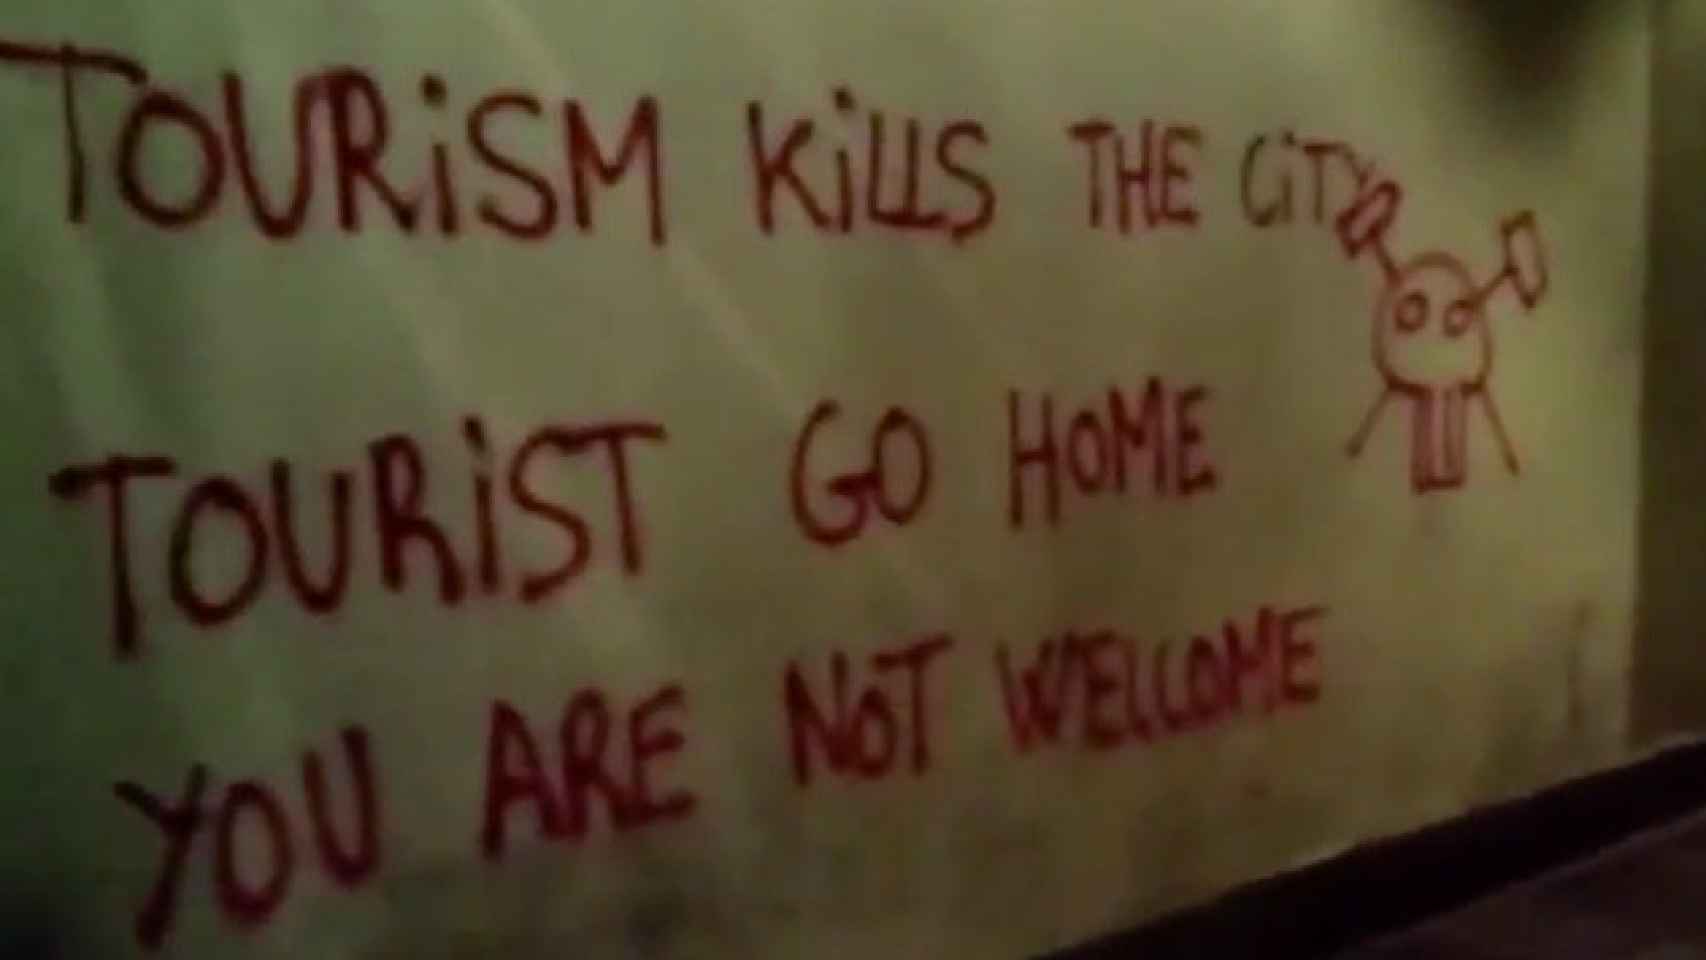 Imagen del vídeo publicado por Endavant en redes sociales en el que graban los actos vandálicos contra el turismo / CG